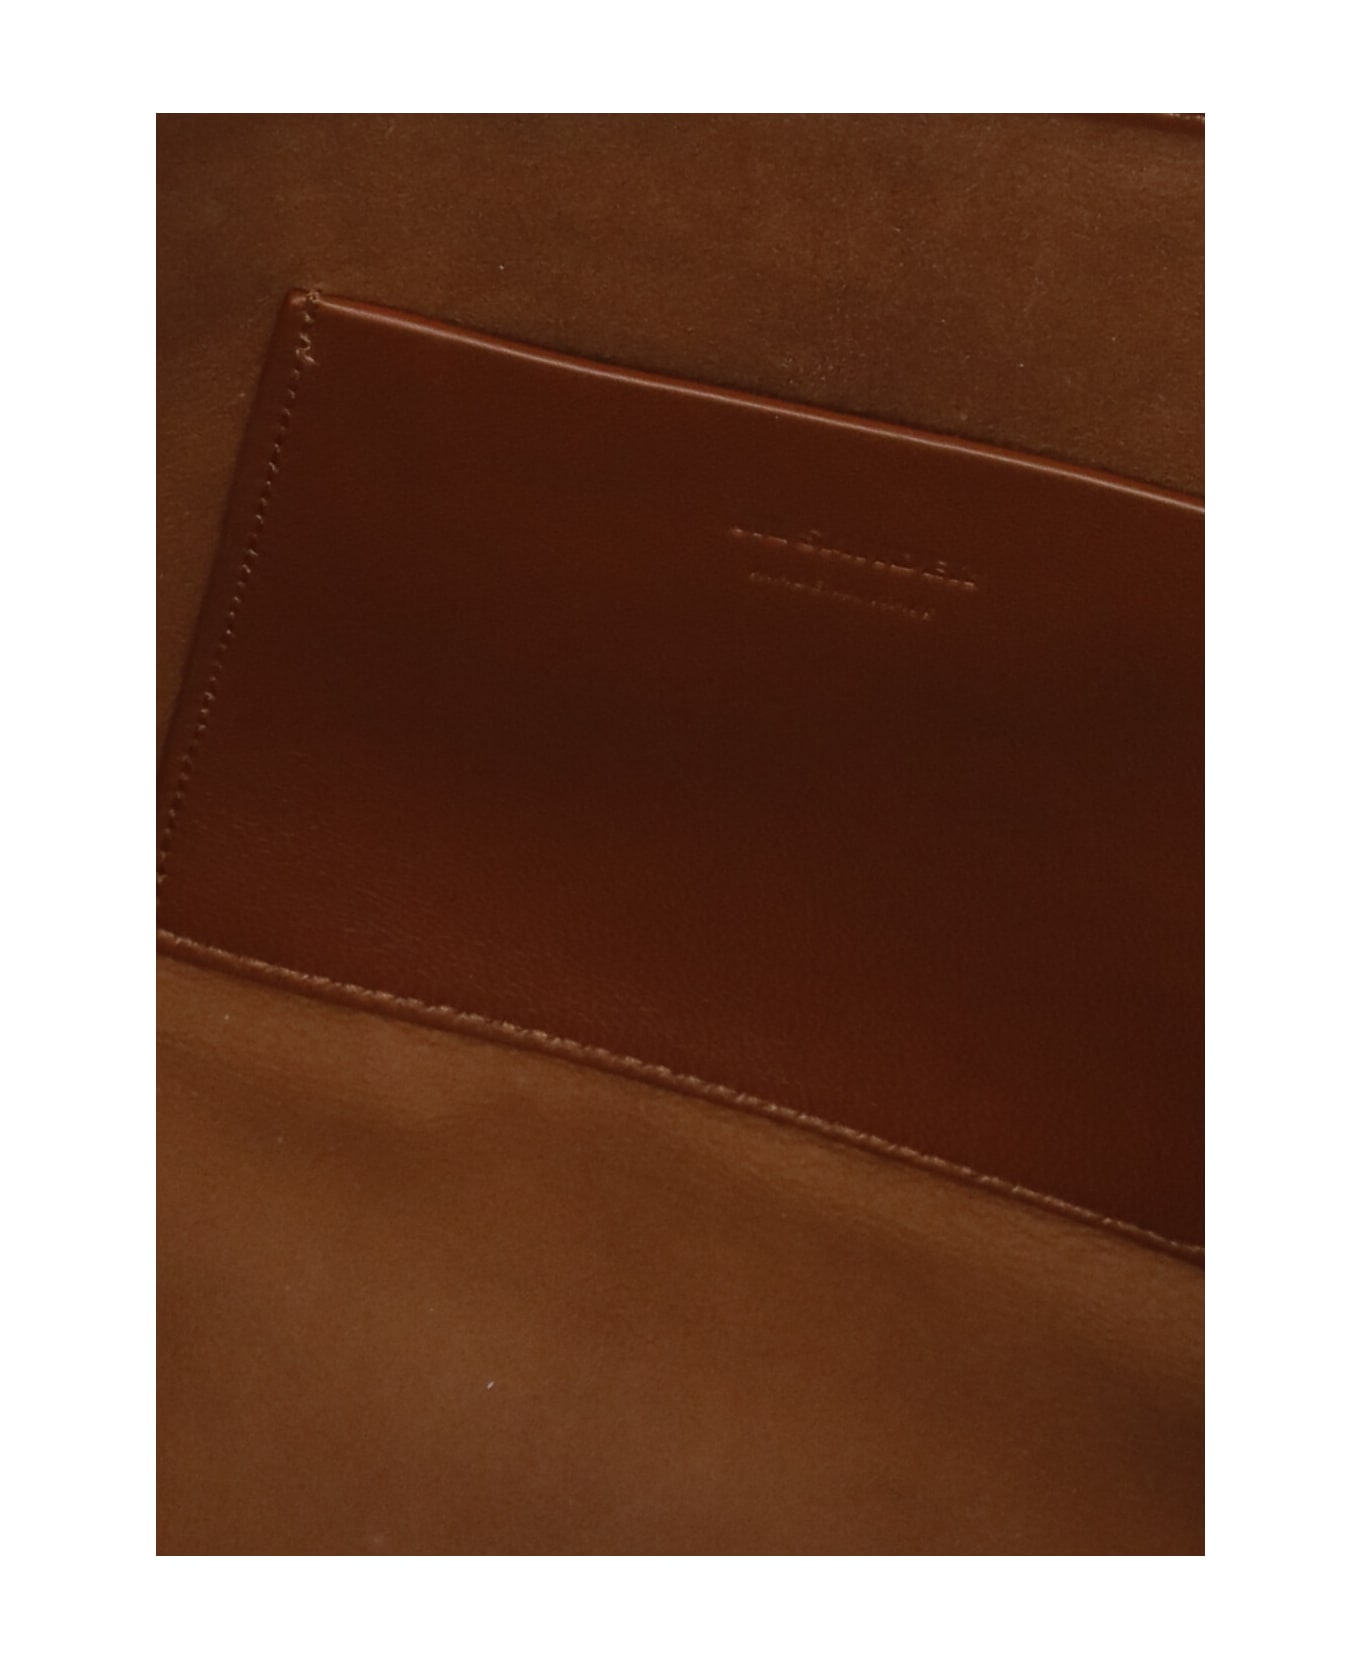 Jil Sander Leather Shoulder Bag - Brown